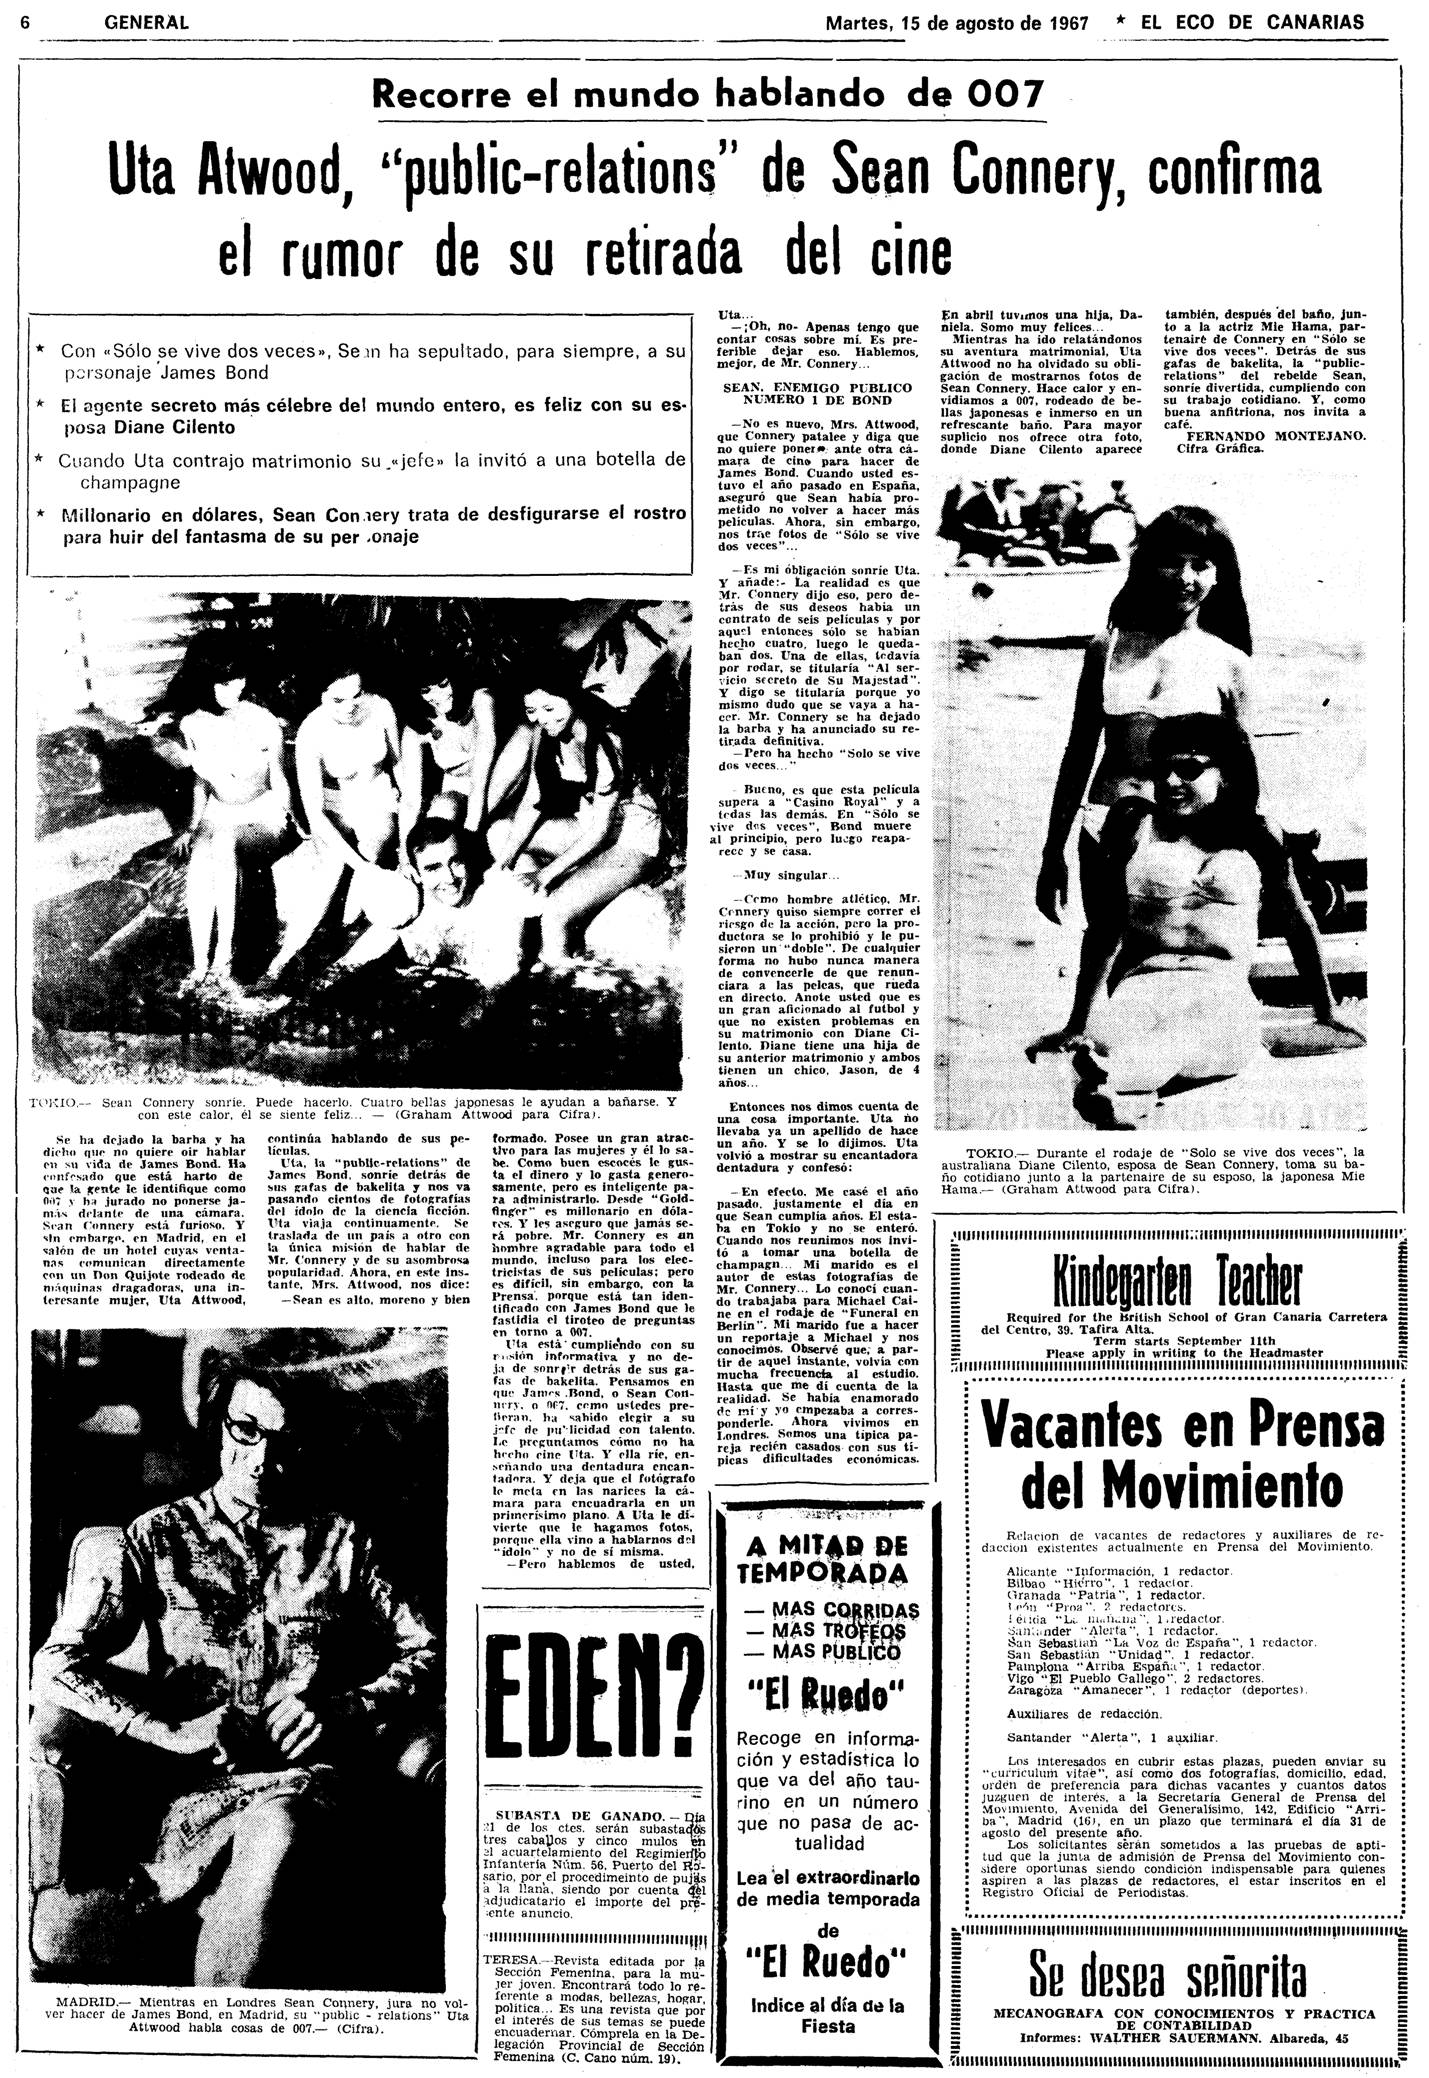 05 1967 08 15 Eco de Canarias Abandono Connery